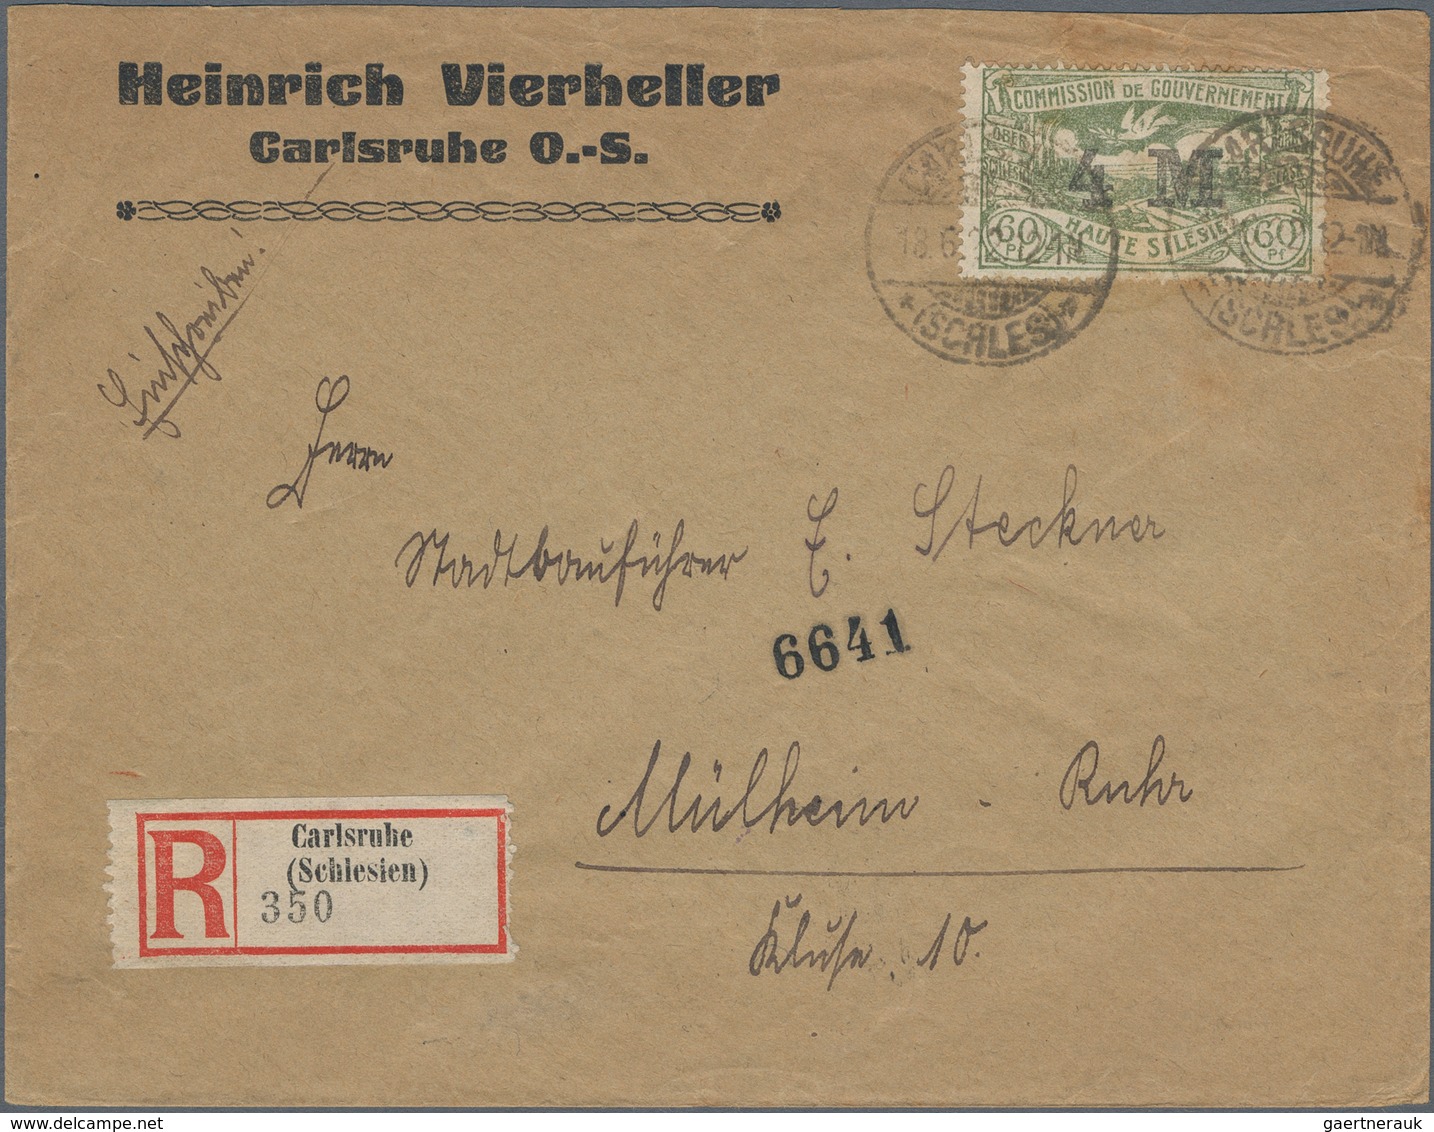 Deutsches Reich - Nebengebiete: 1902/1920, vielseitige Partie von ca. 170 Bedarfs-Briefen/Karten, da